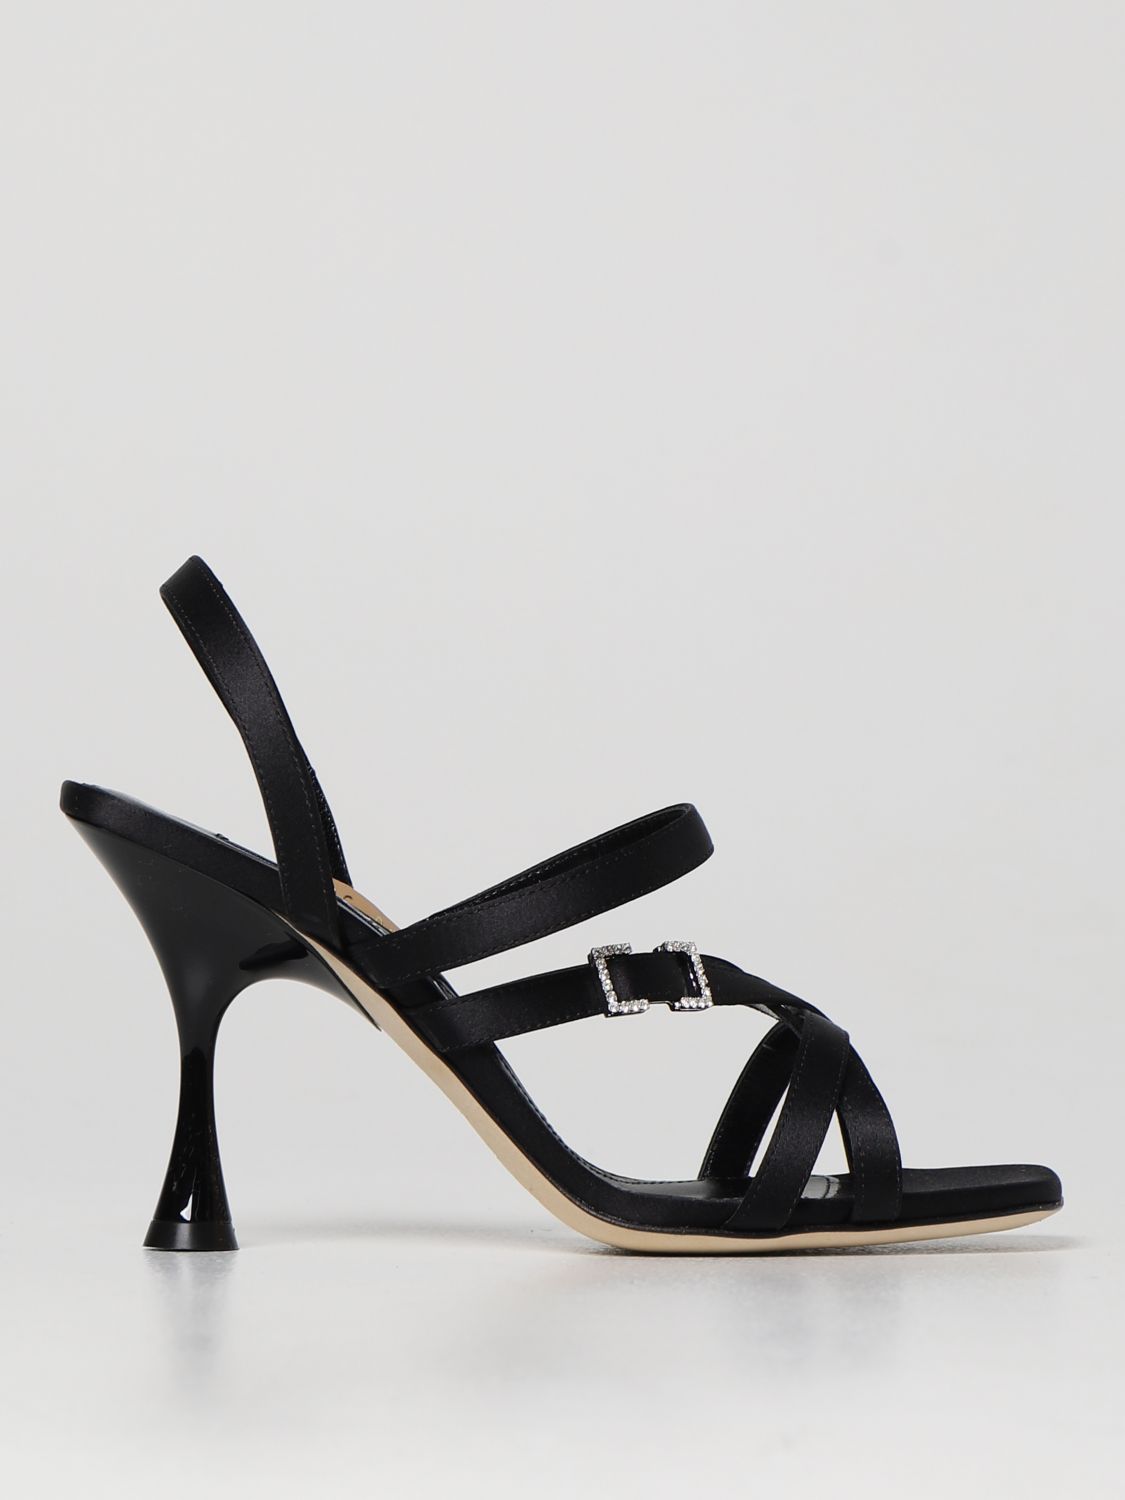 Sandalias de Sergio Rossi de color Negro Mujer Zapatos de Tacones de Sandalias con cuña 